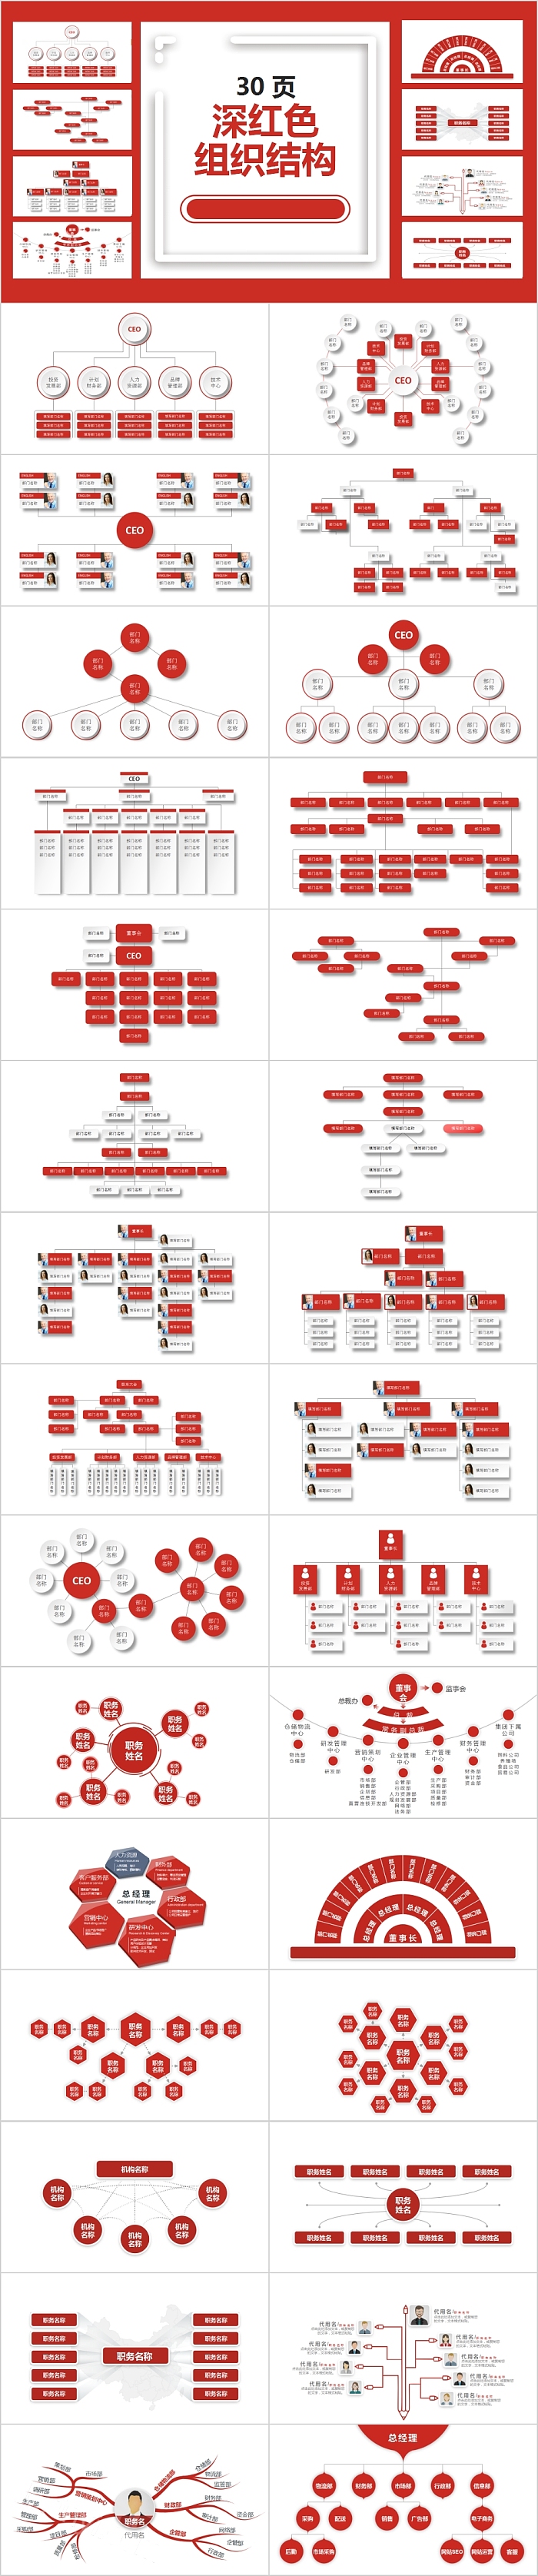 深红色组织结构组织框架PPT模板